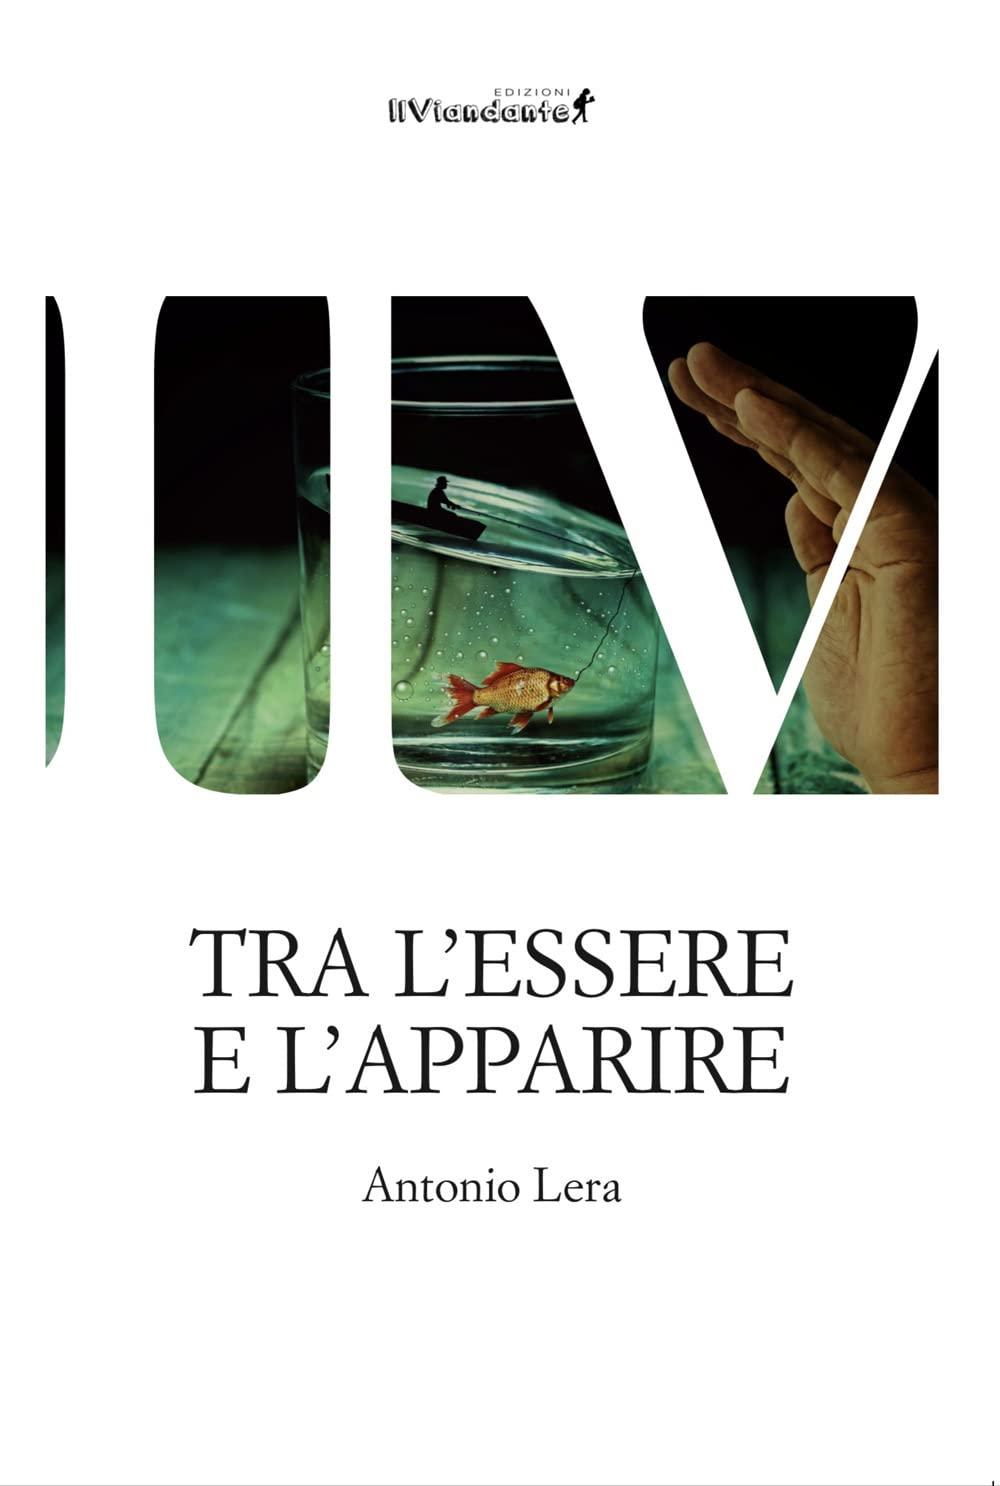 Libro "Tra l'essere e l'apparire" di Antonio Lera